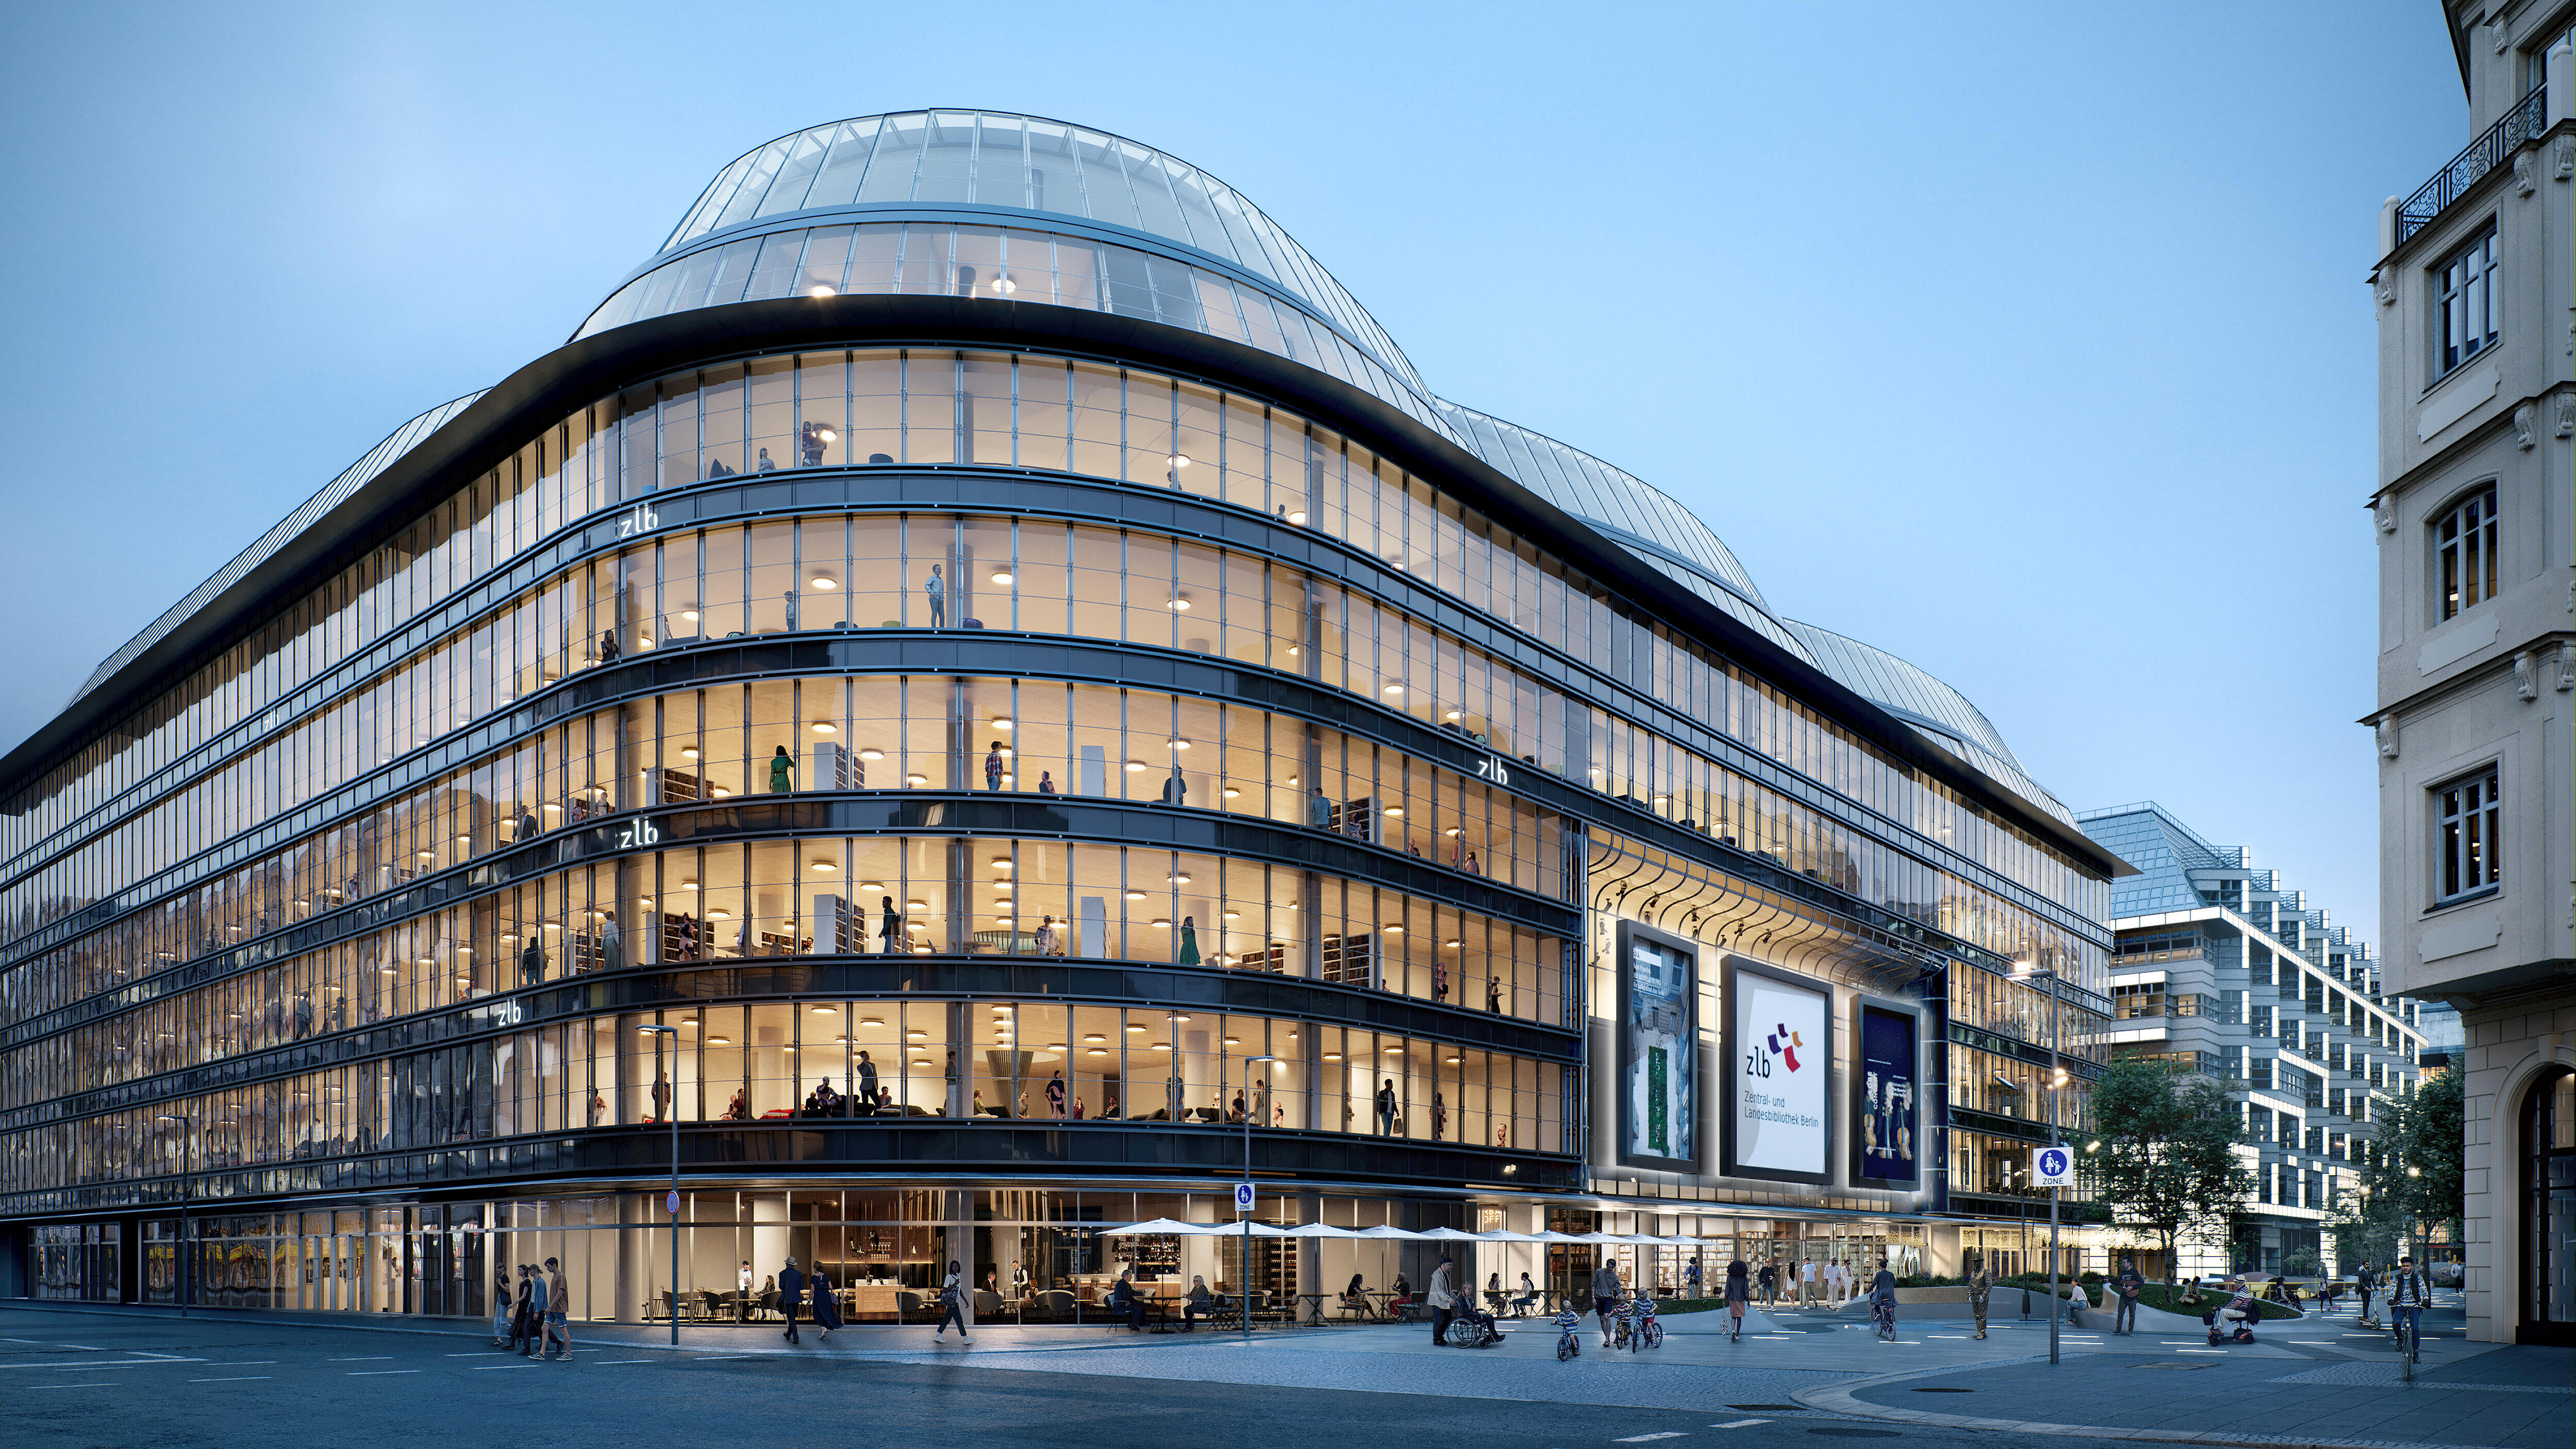 Es ist das Kaufhaus Lafayette Berlin in der Friedrichstraße abgebildet